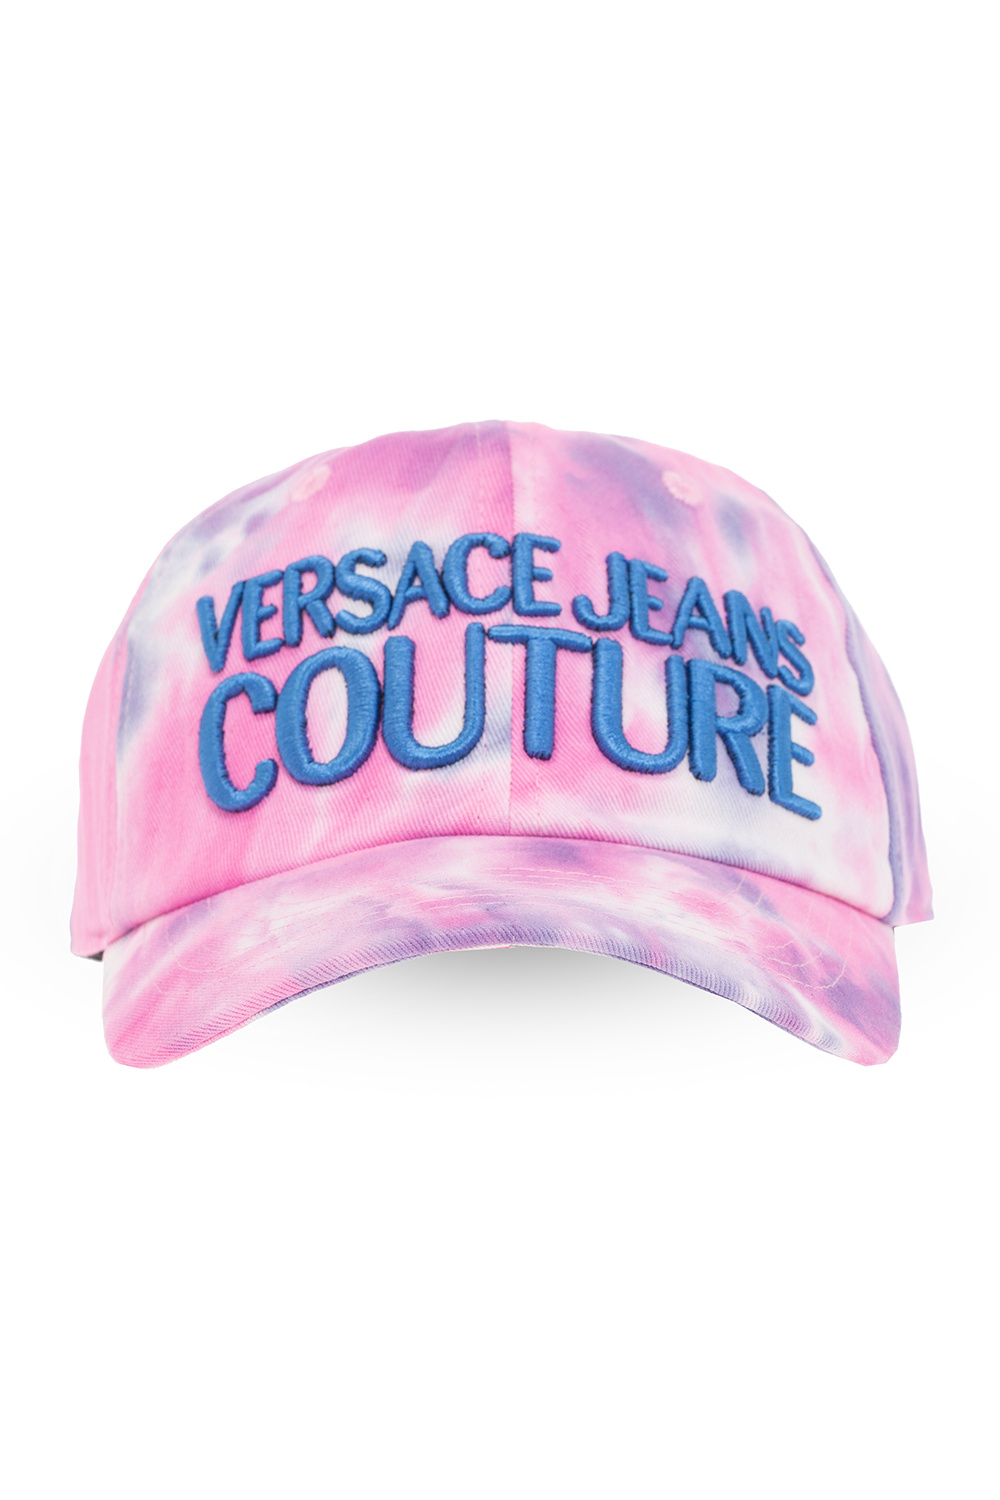 Versace Jeans Couture Alamo Destroyed Cap Black